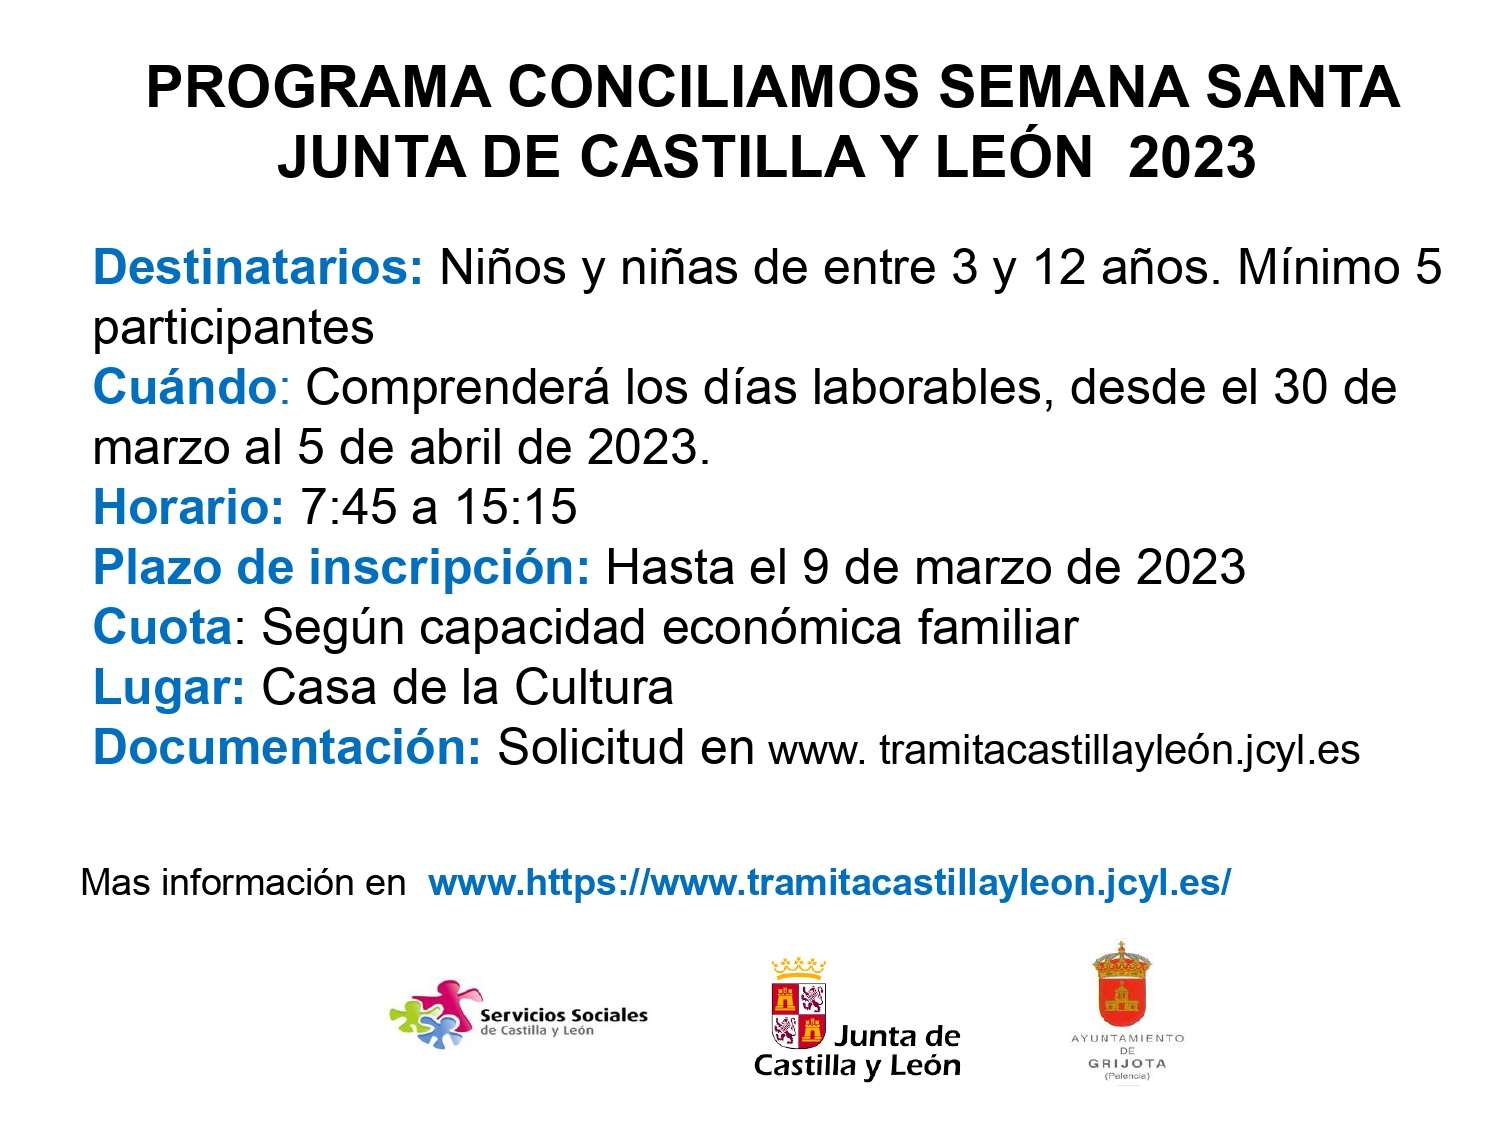 Conciliamos Semana Santa 2023 Junta de Castilla y León